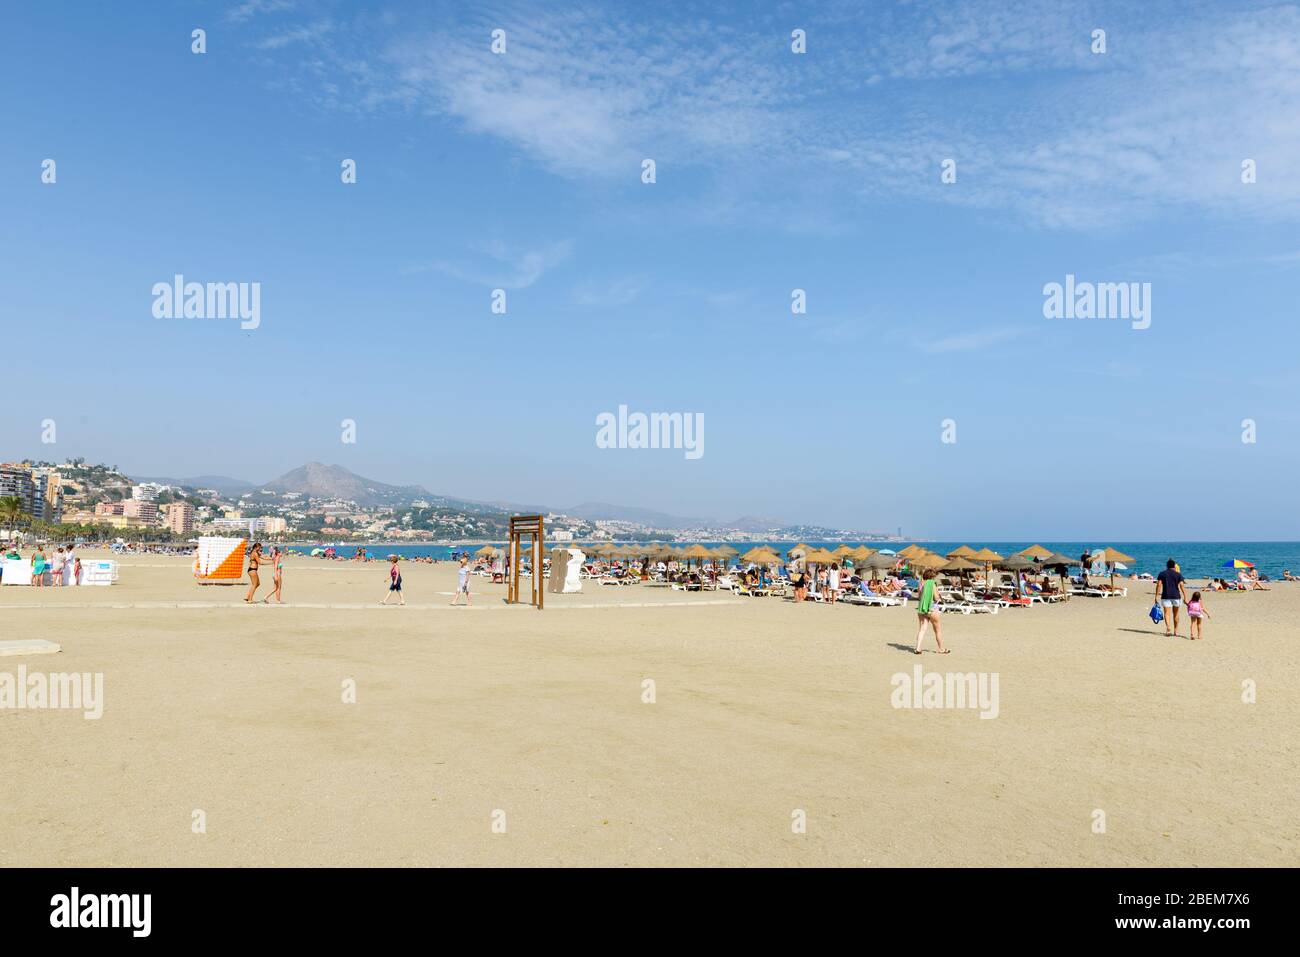 MALAGA, SPANIEN - 3. SEPTEMBER: Menschen, die einen heißen Sommertag am Strand von Malaga genießen Stockfoto